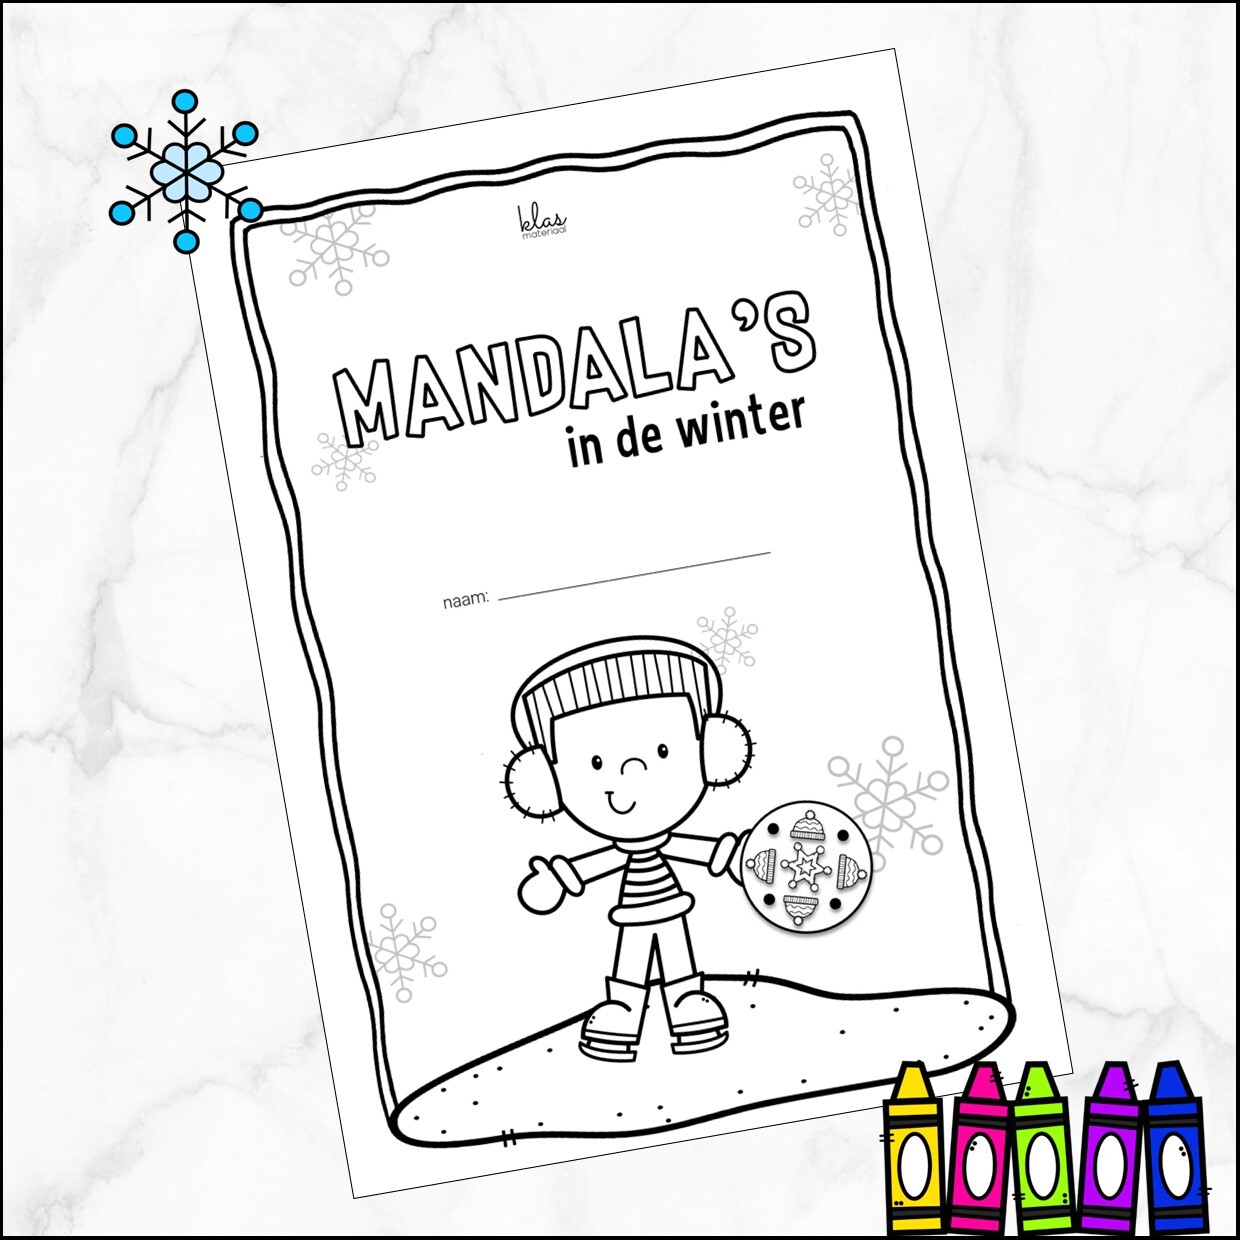 Mandala’s in de winter